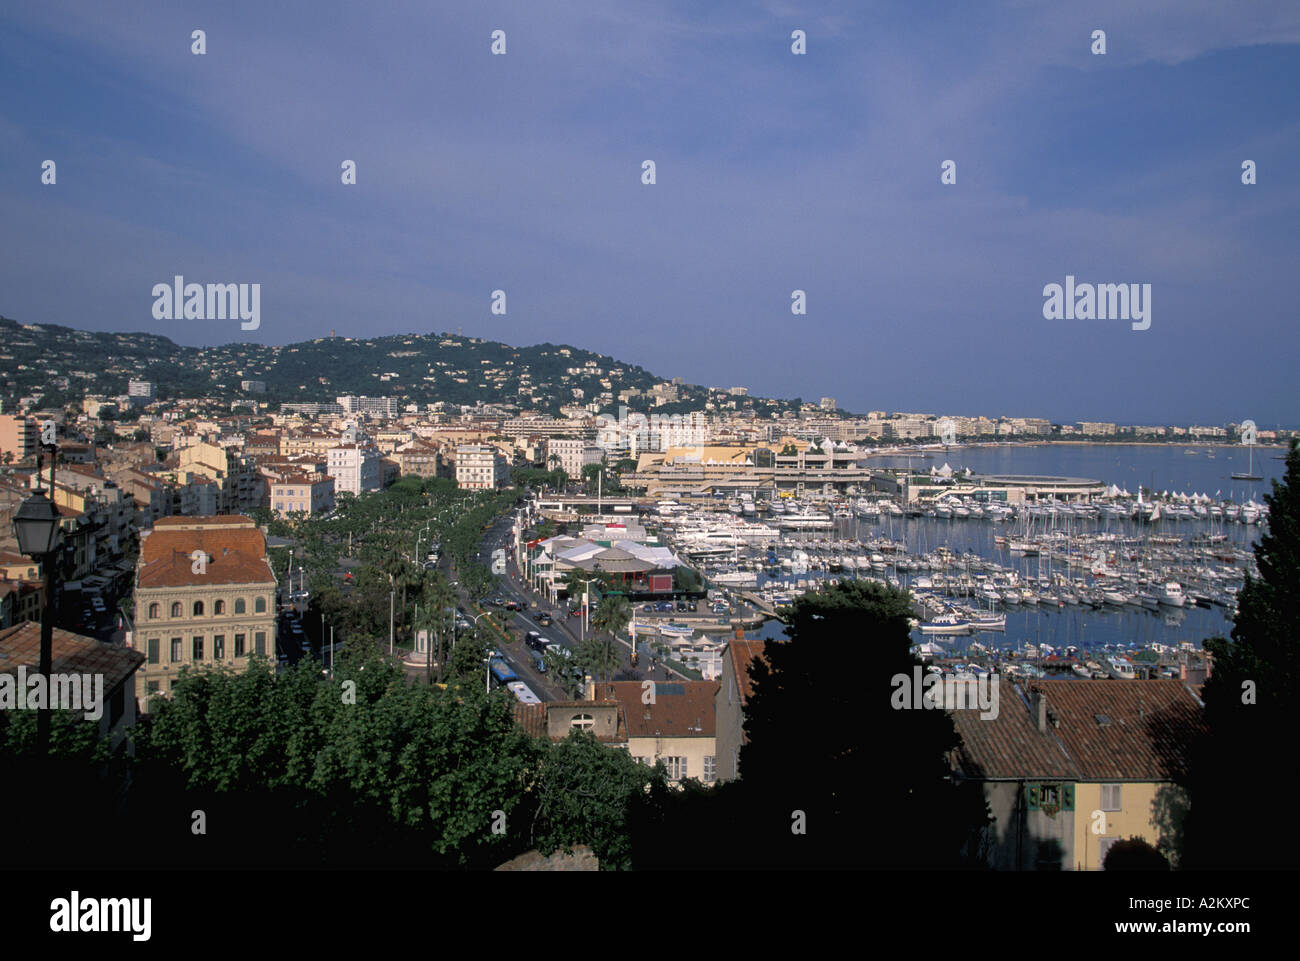 L'UNION EUROPÉENNE, la France, la Côte d'Azur / French Riviera, Cannes. Sommaire des port et la ville du Suquet, soir. Banque D'Images